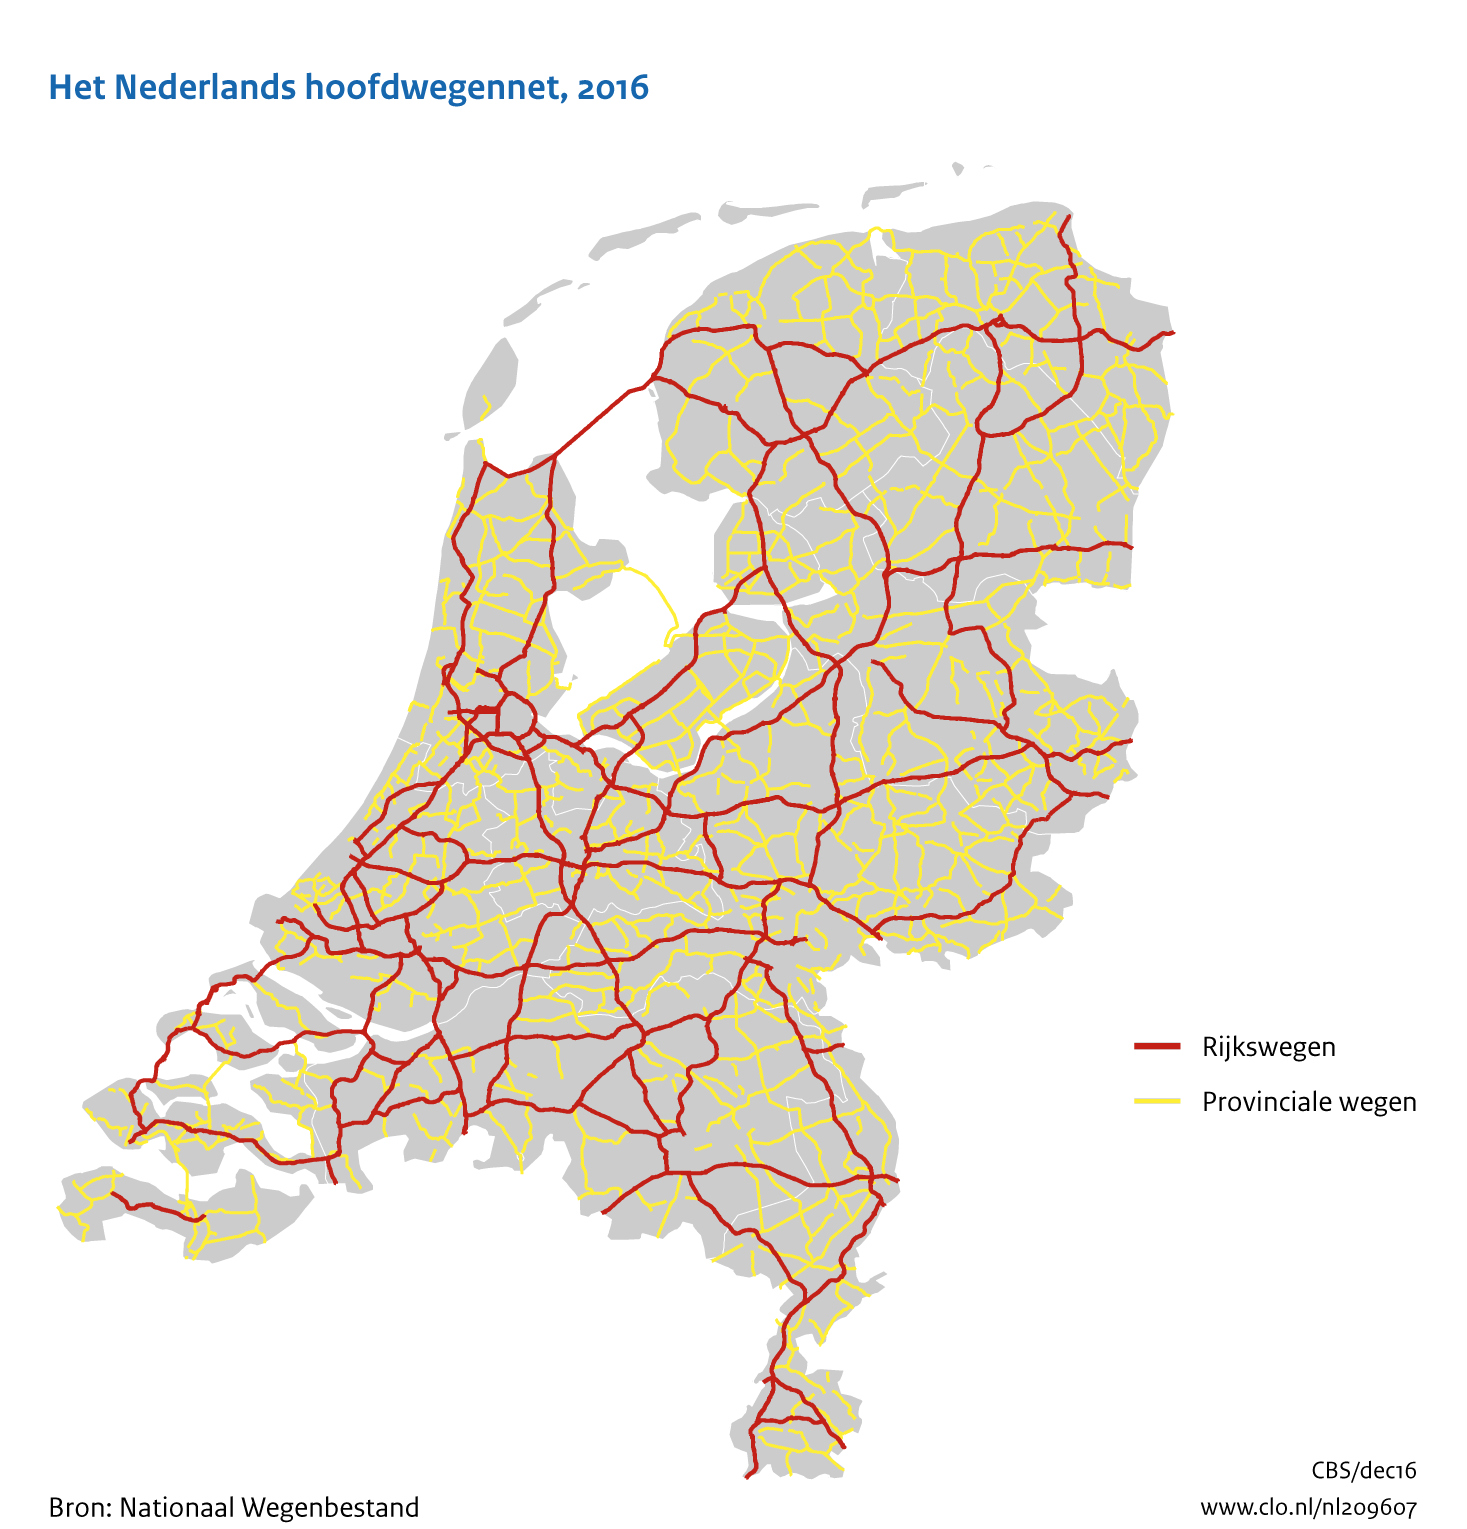 Figuur  Het Nederlandse hoofdwegennet, 2016. In de rest van de tekst wordt deze figuur uitgebreider uitgelegd.